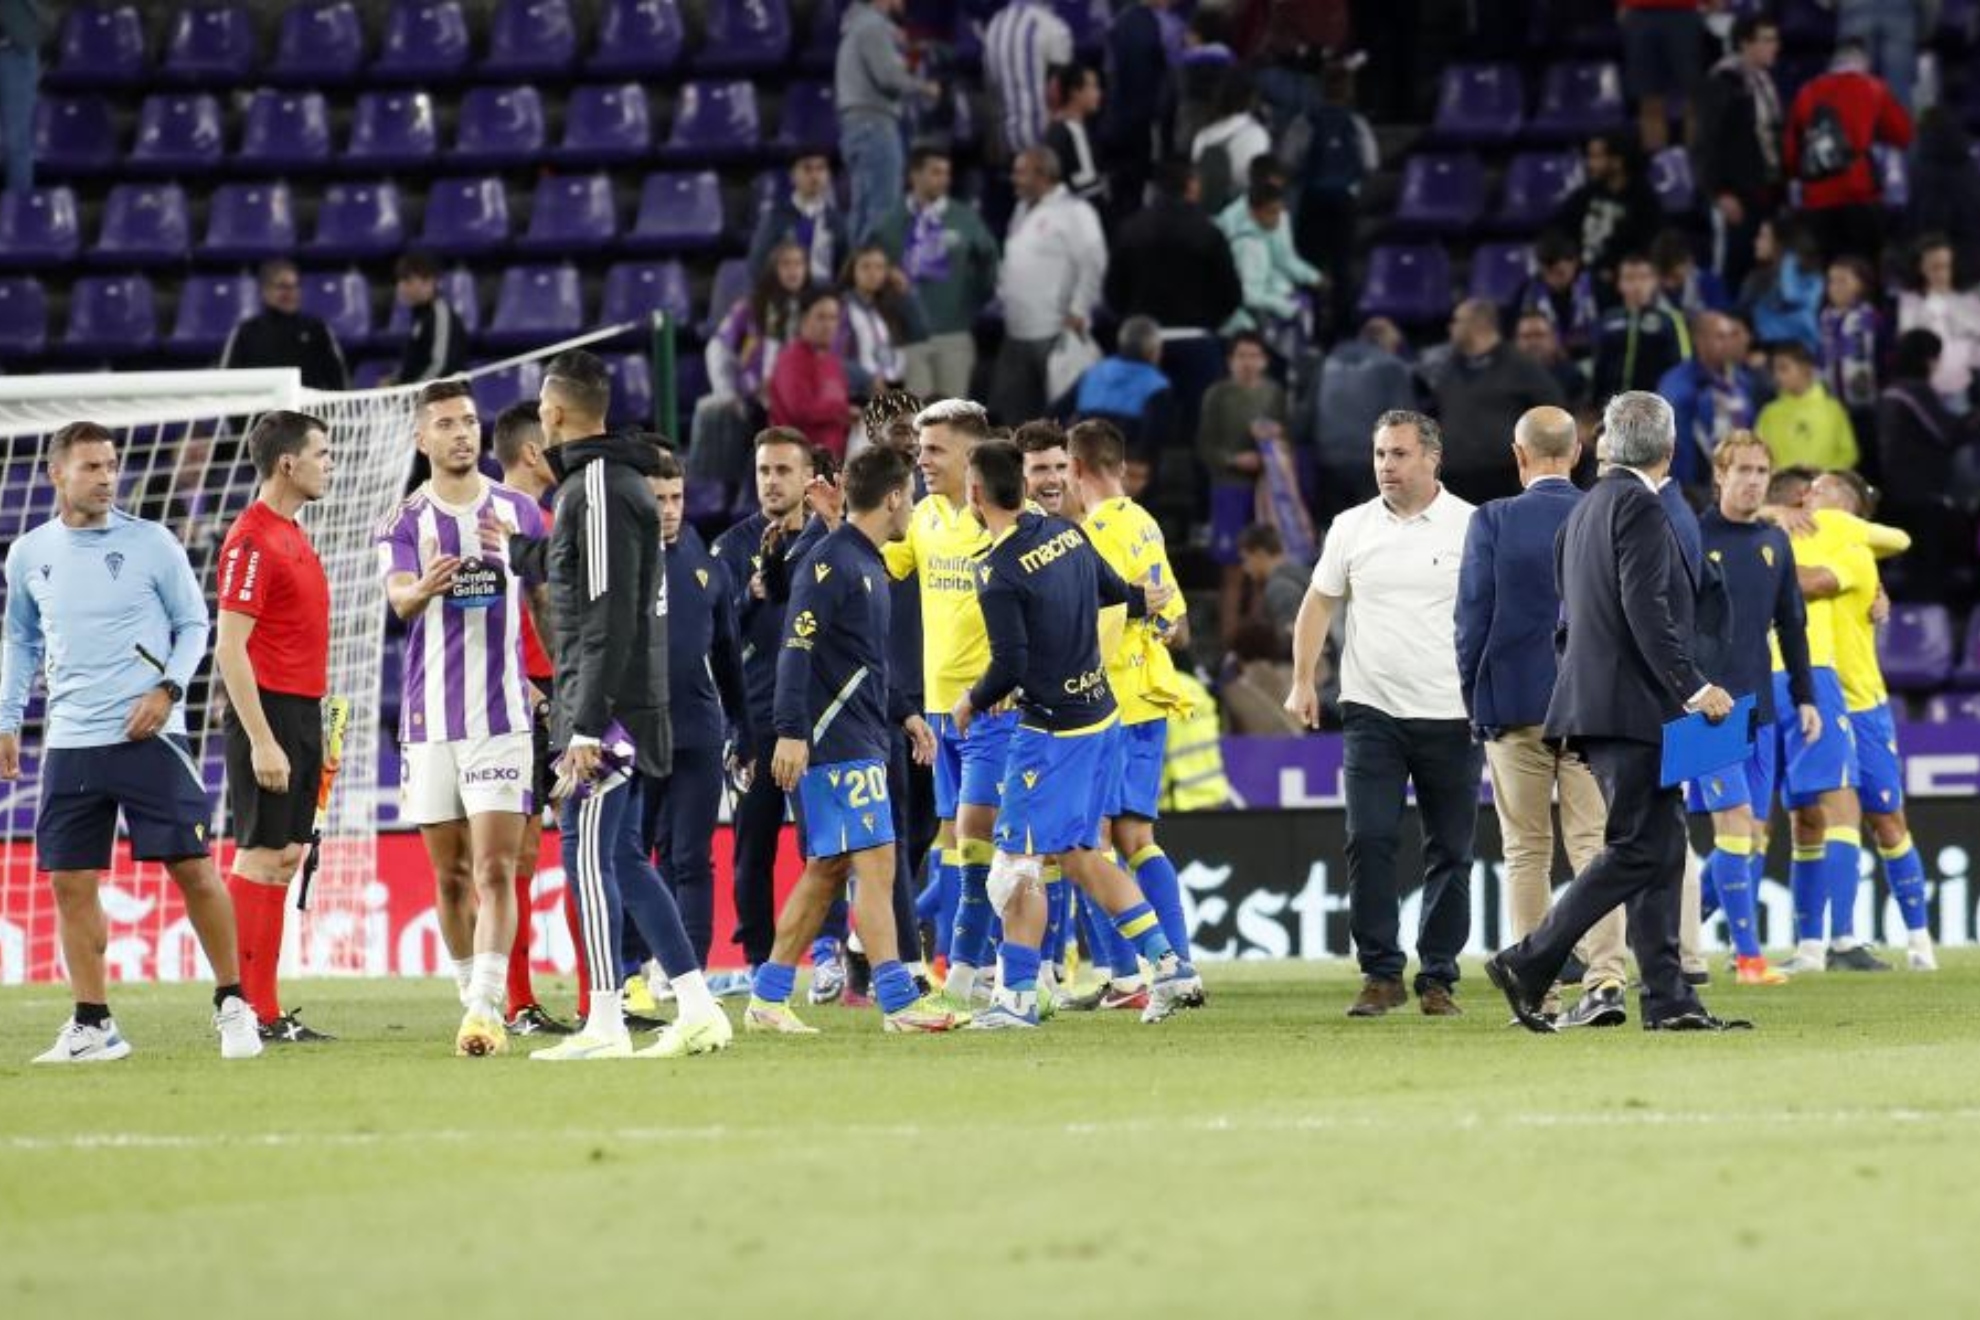 Los jugadores del Cádiz, al final del partido. / MARCA